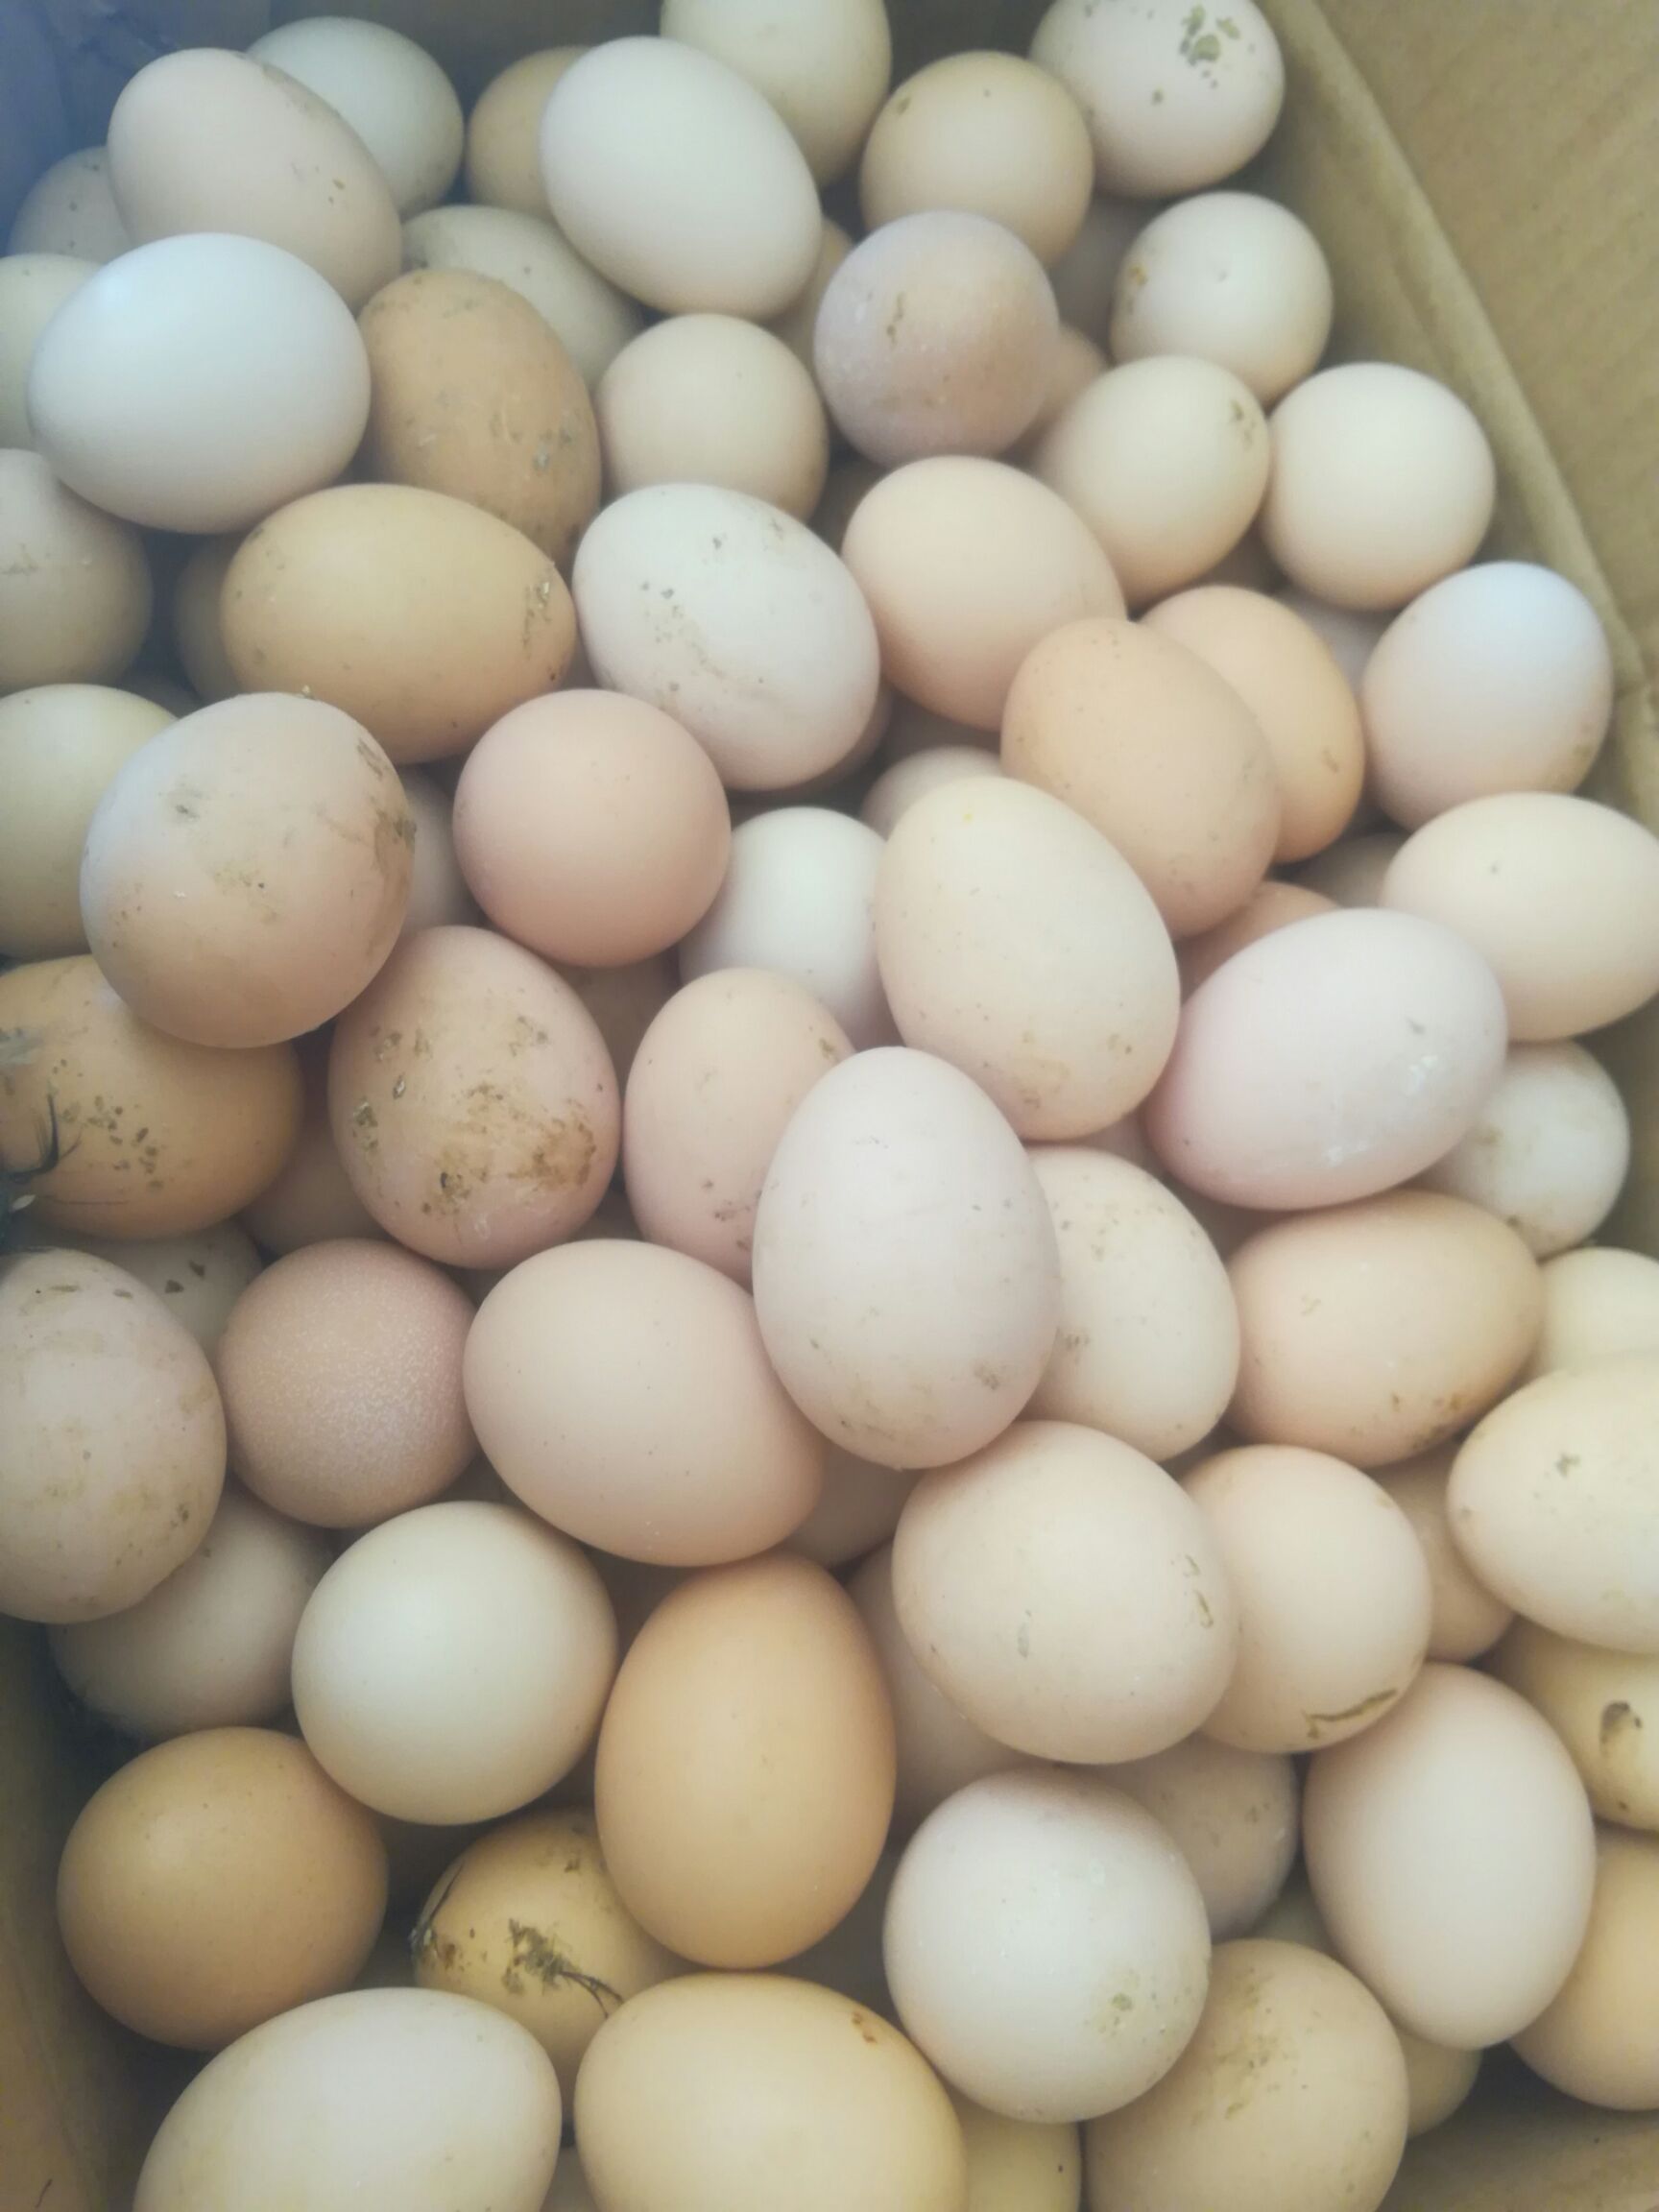 [土鸡蛋批发] 笨鸡蛋价格1.2元/个 - 惠农网